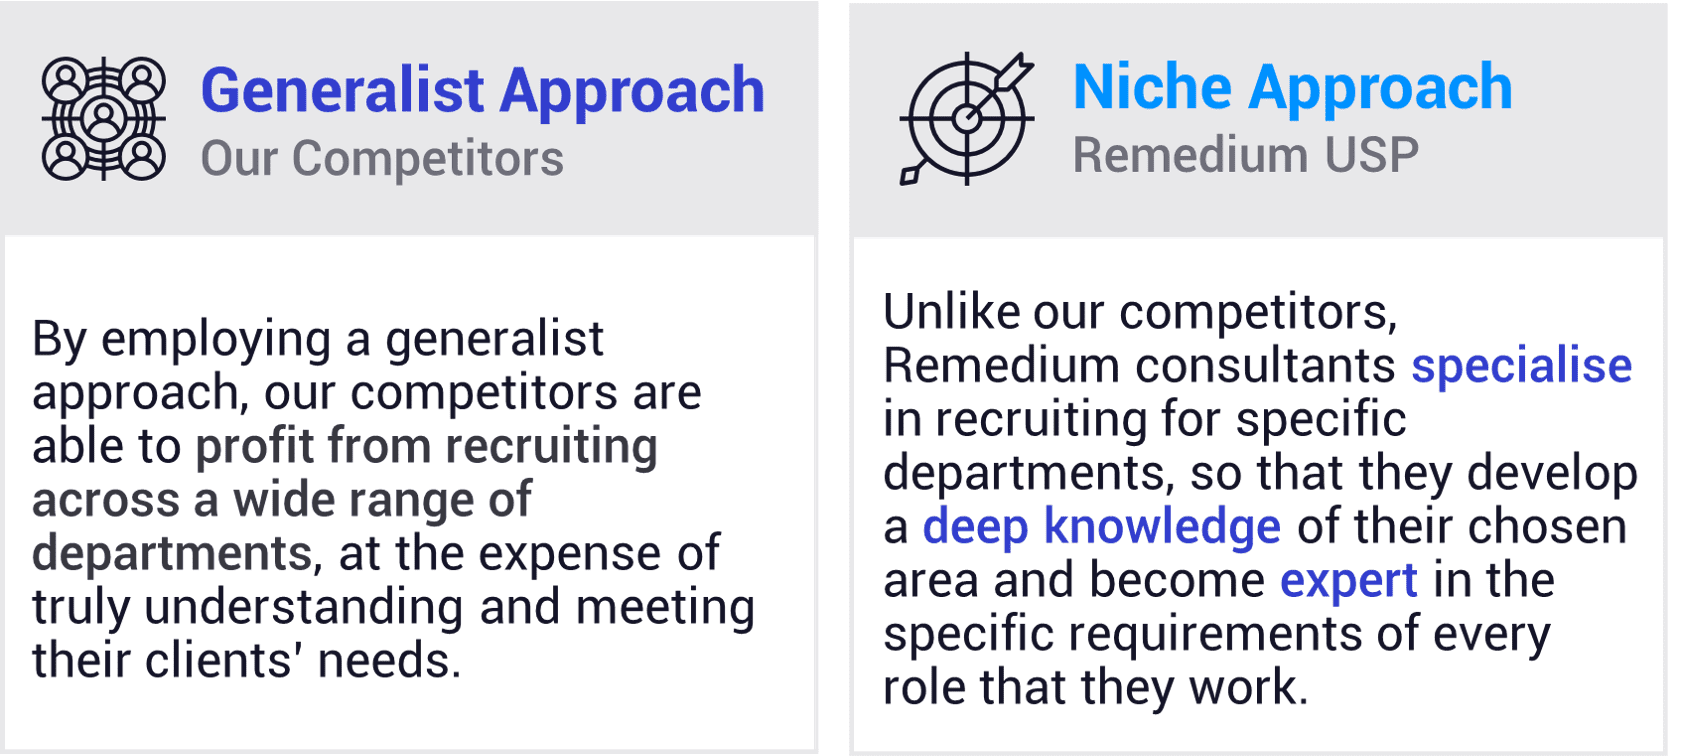 Niche Approach - Remedium's Model